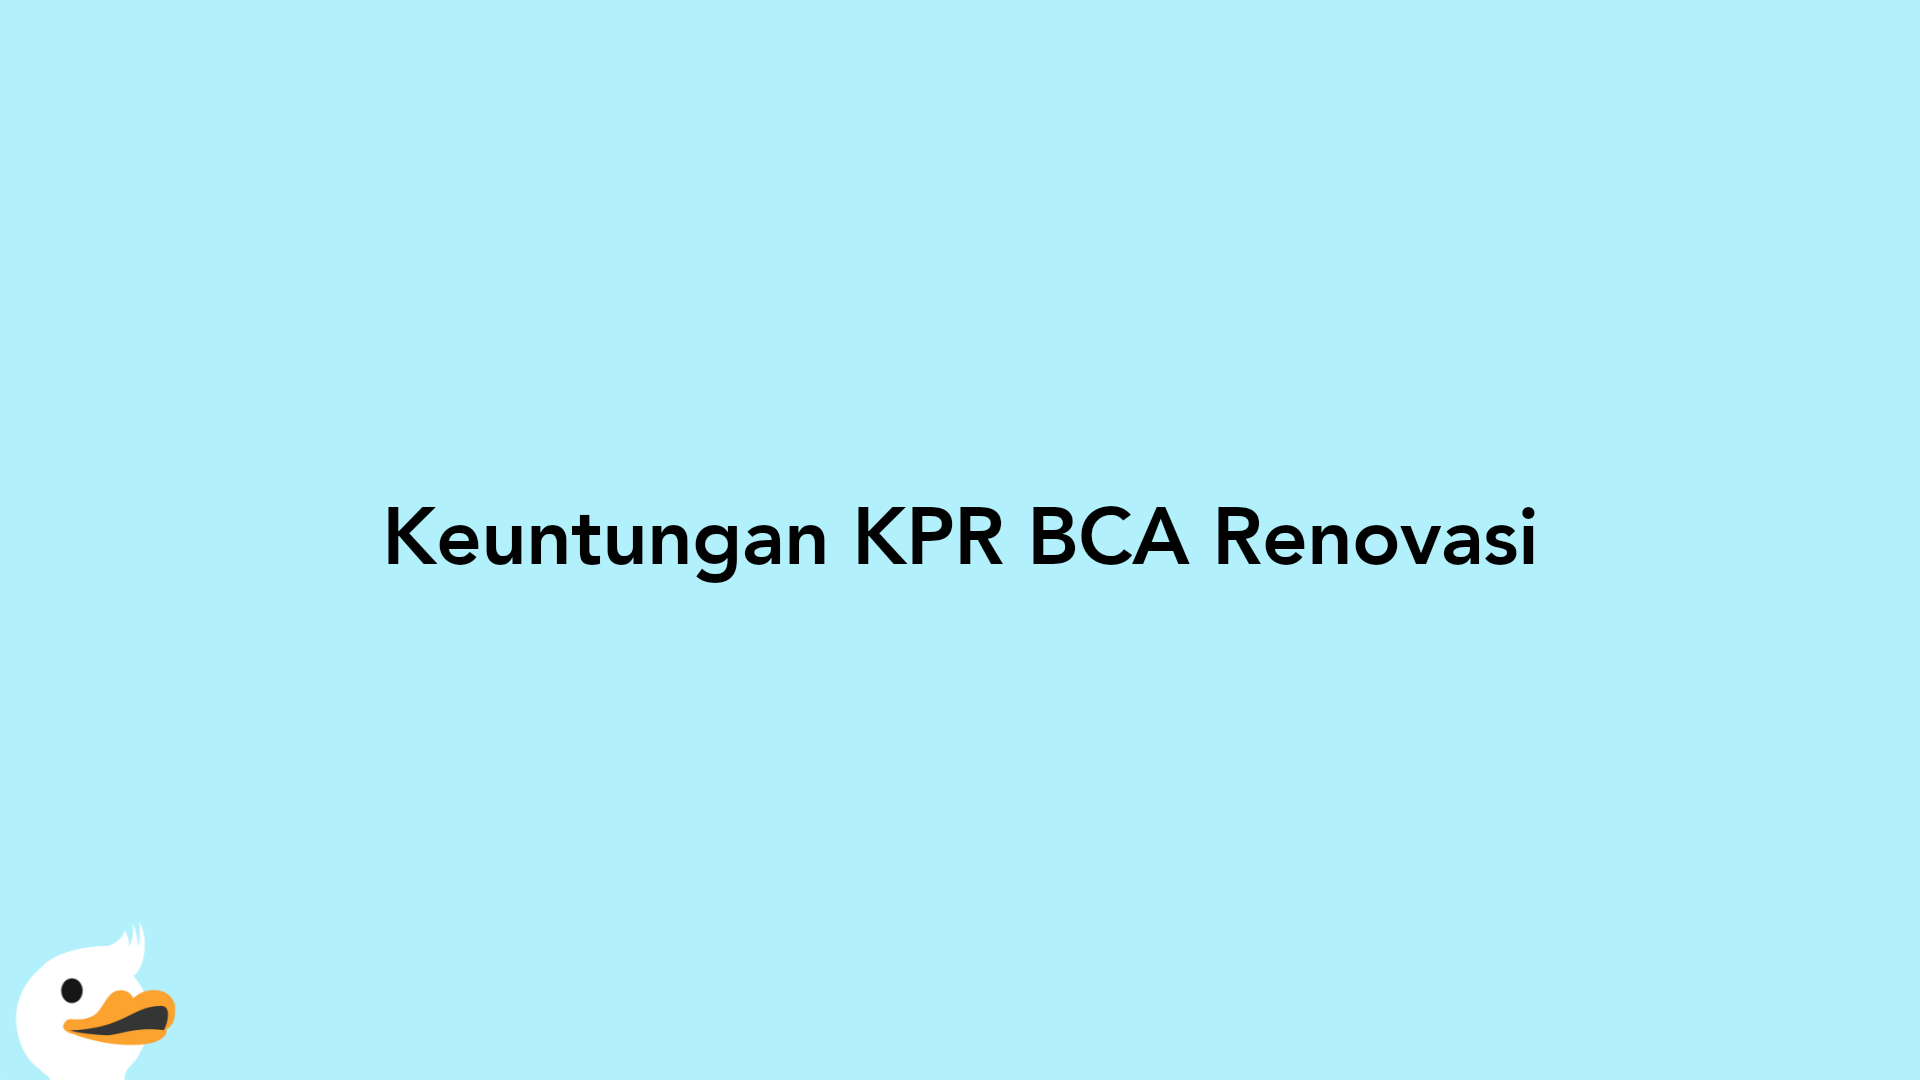 Keuntungan KPR BCA Renovasi